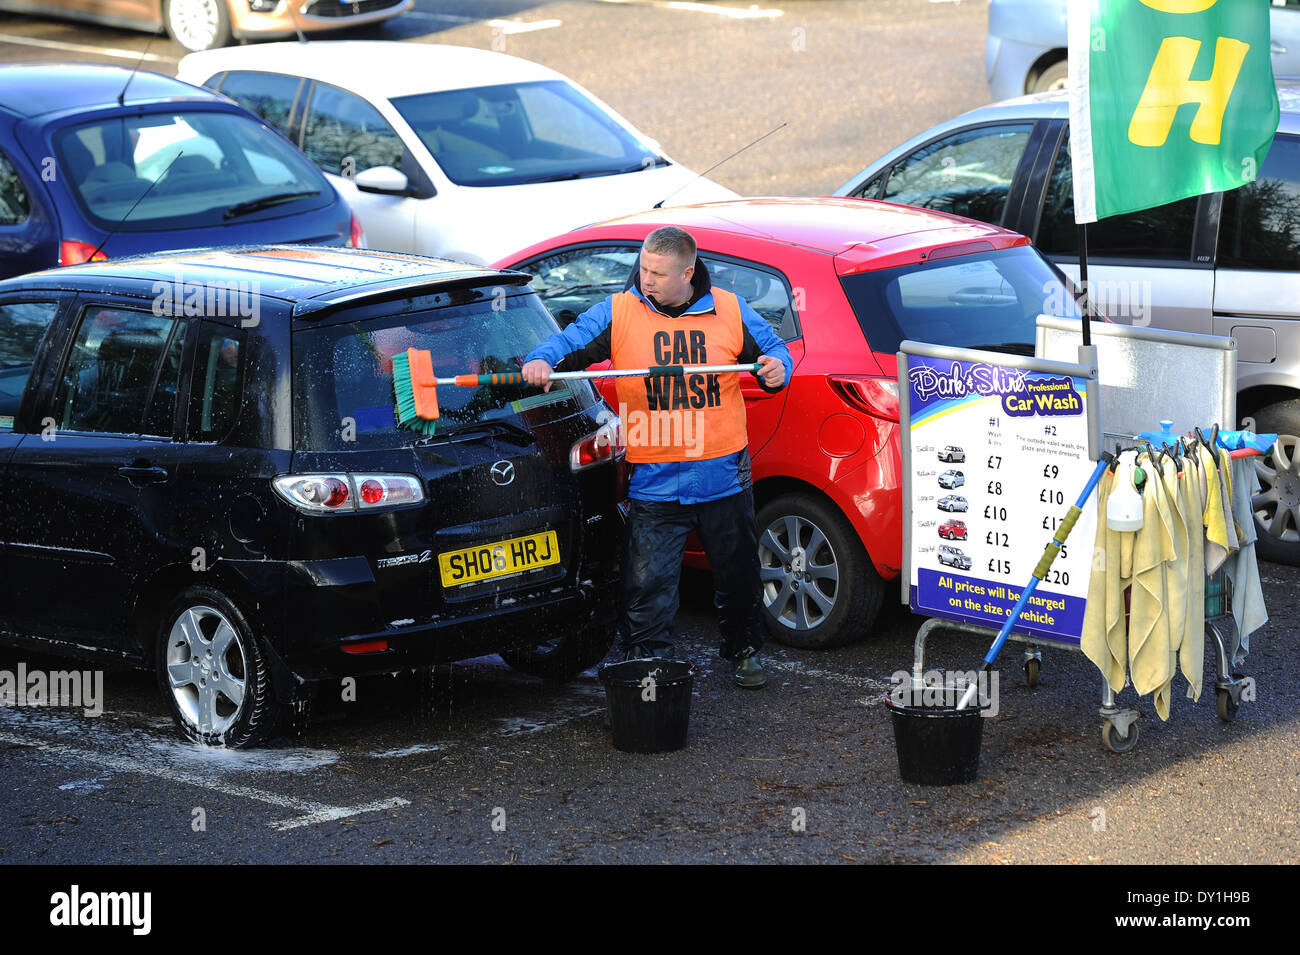 Lavage de voiture, personne laver des voitures dans un parking, UK Banque D'Images